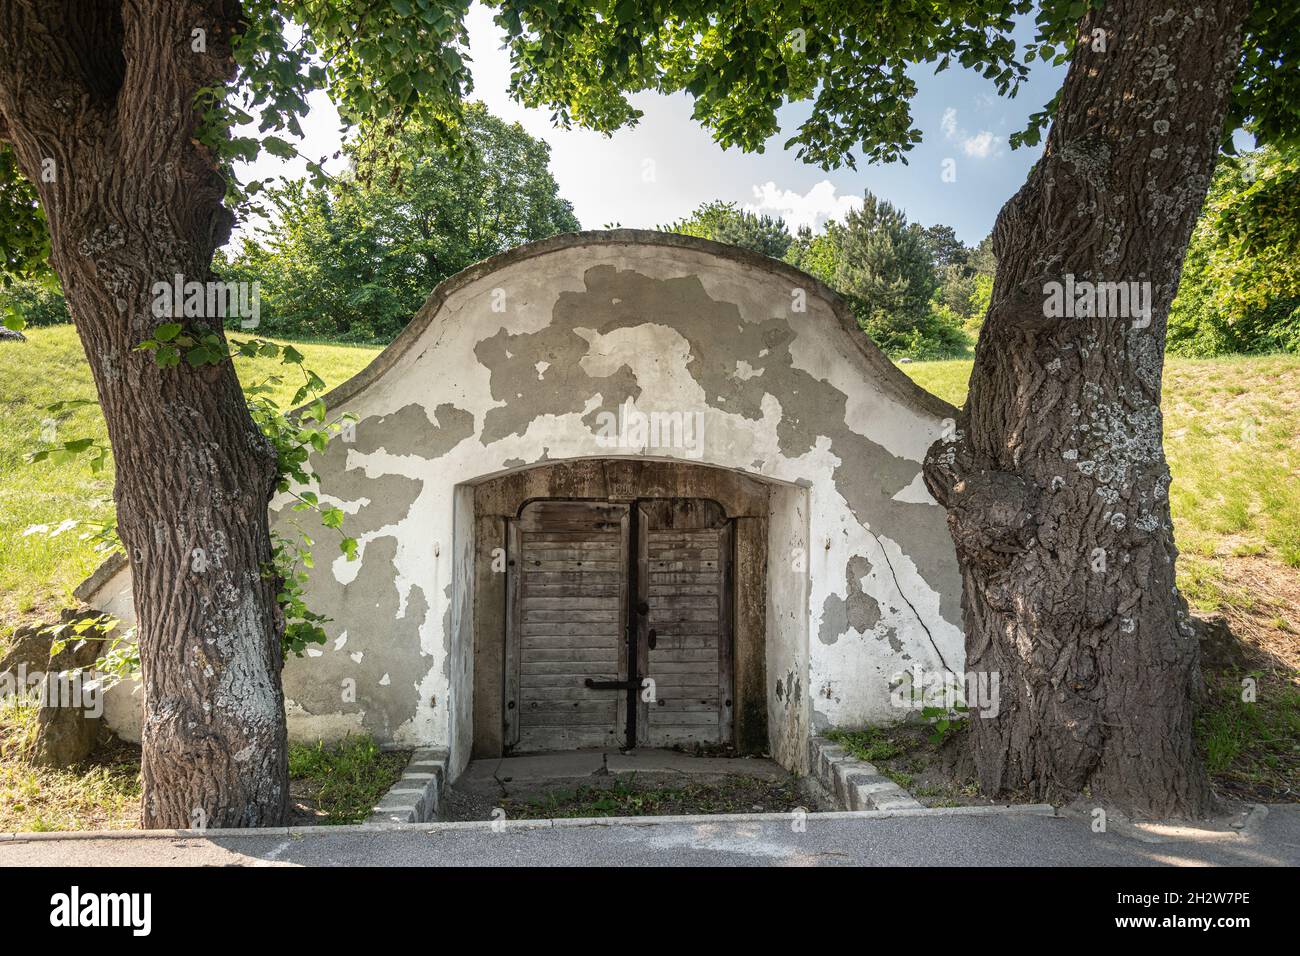 Historical Wine Cellars in Sommerein, Burgenland, Austria Stock Photo